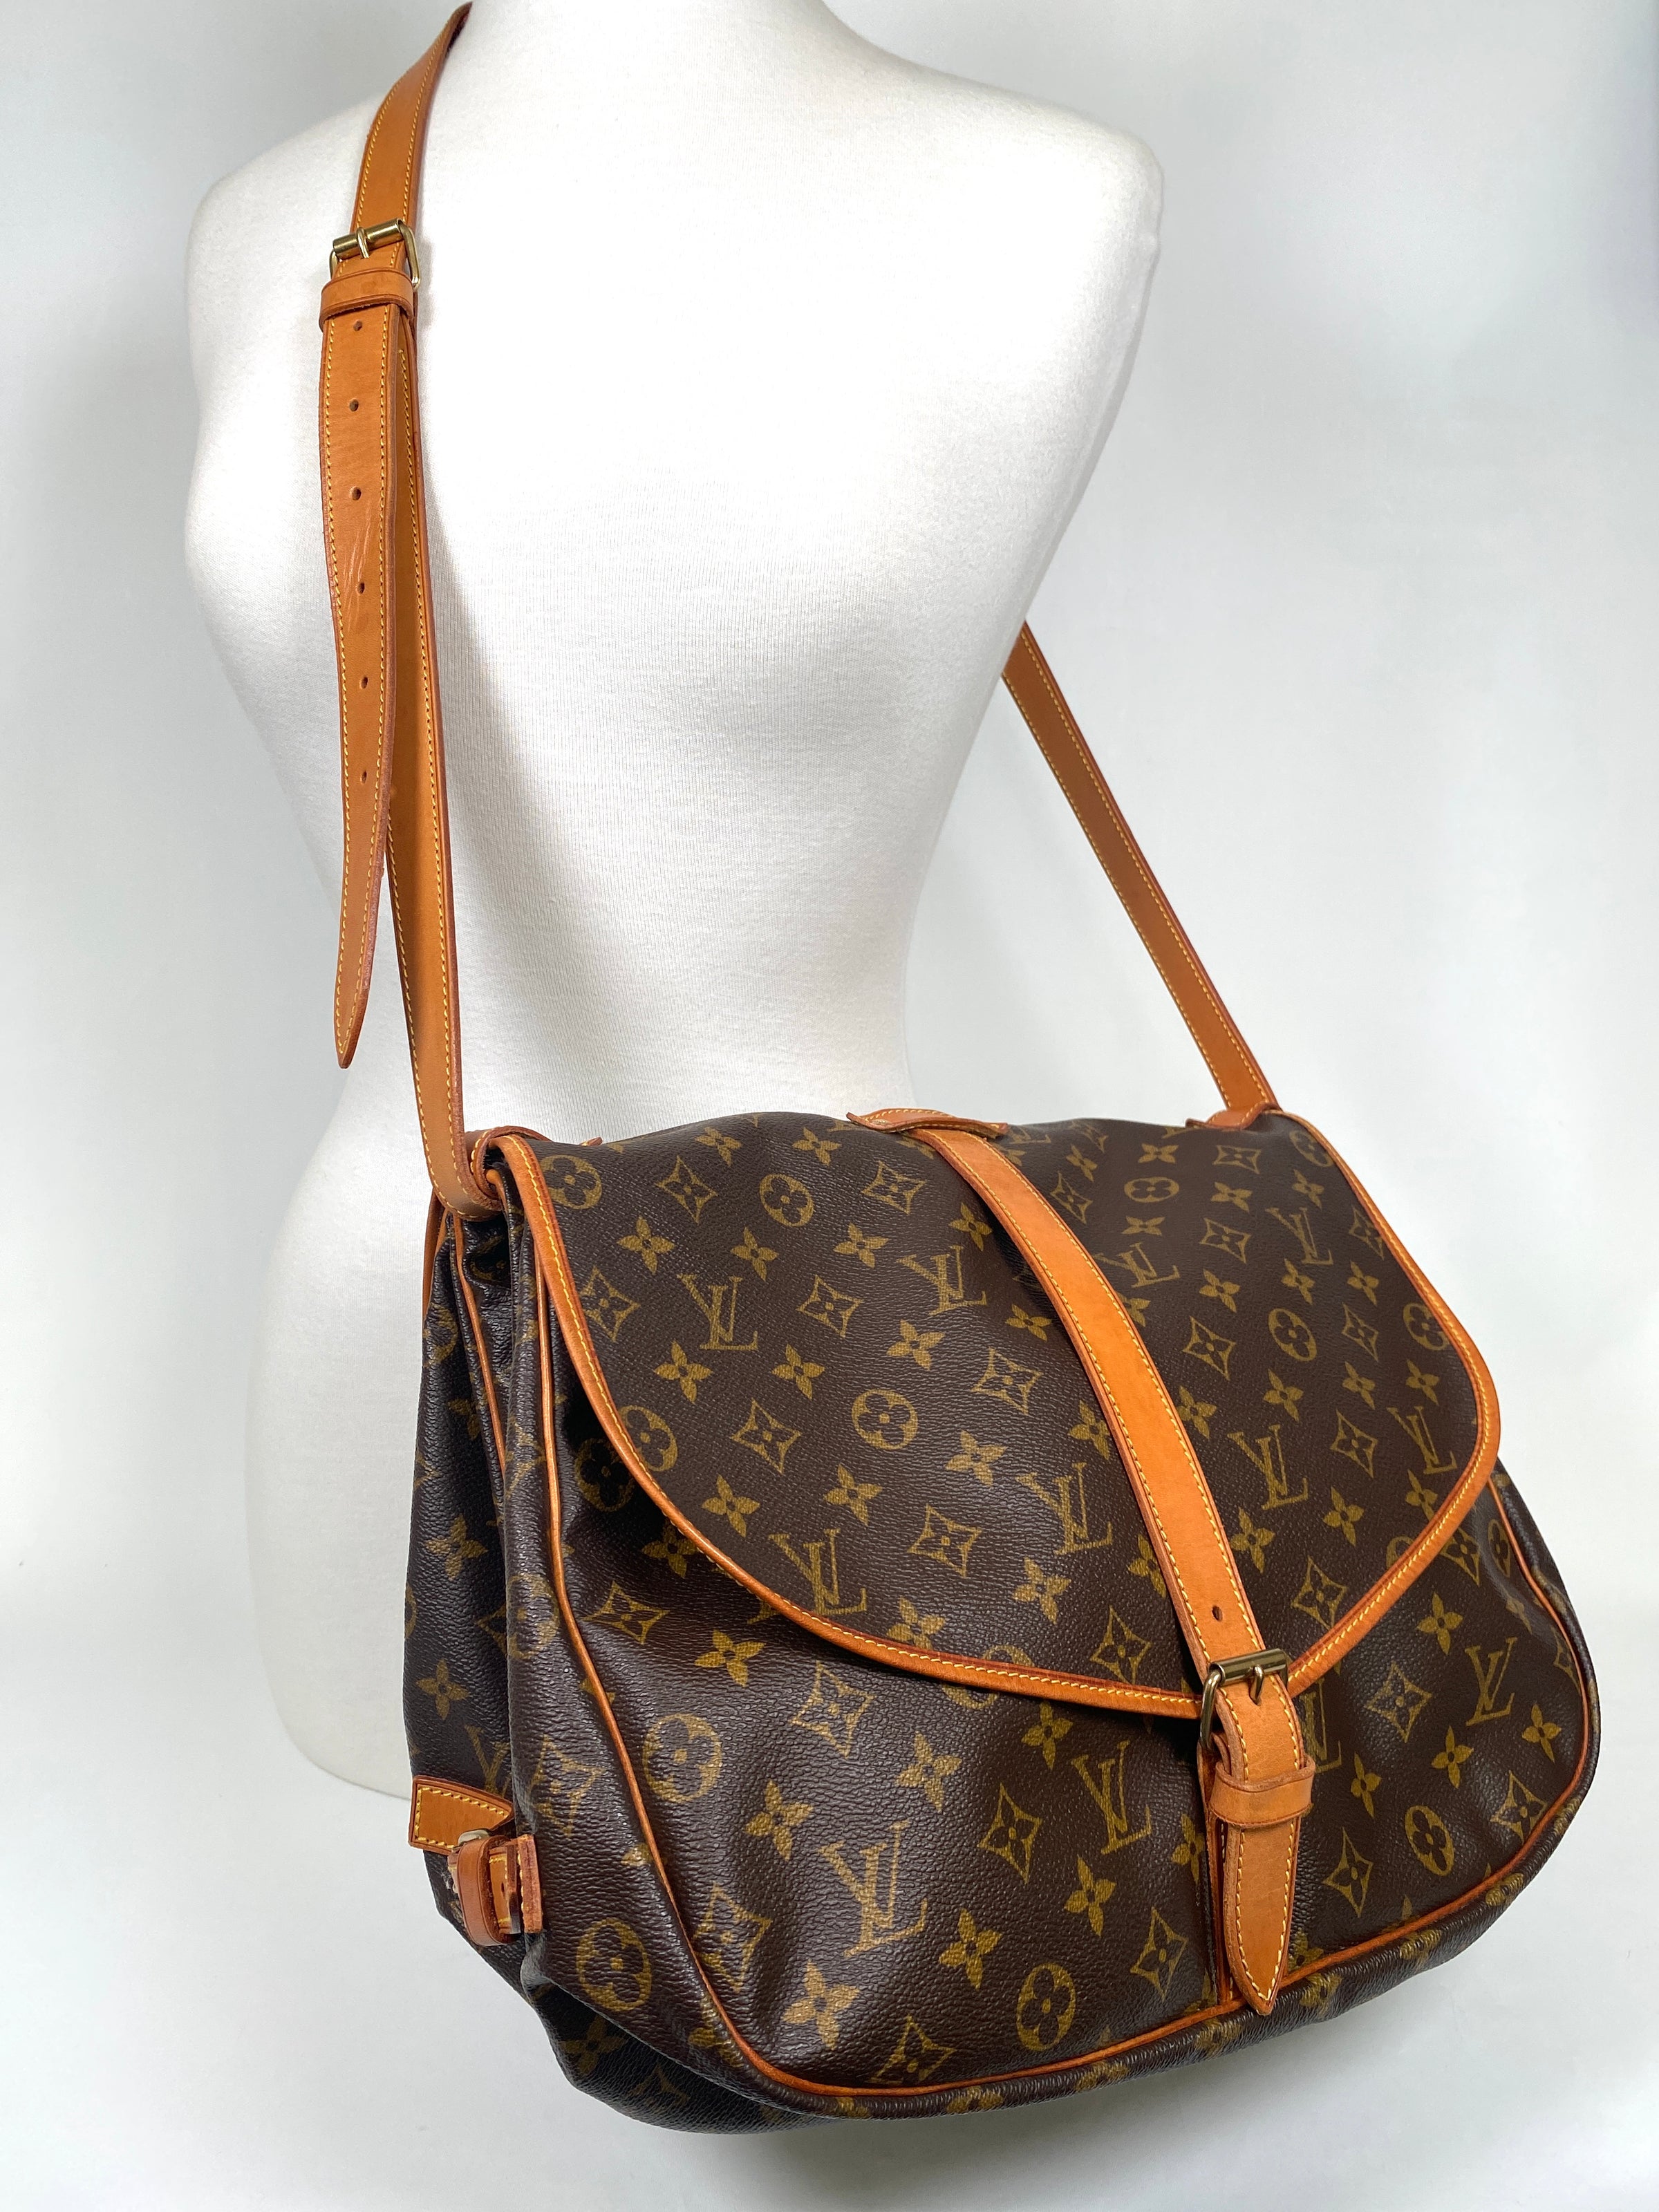 Louis Vuitton, Bags, Louis Vuitton Saumur Gm 35 Authentic